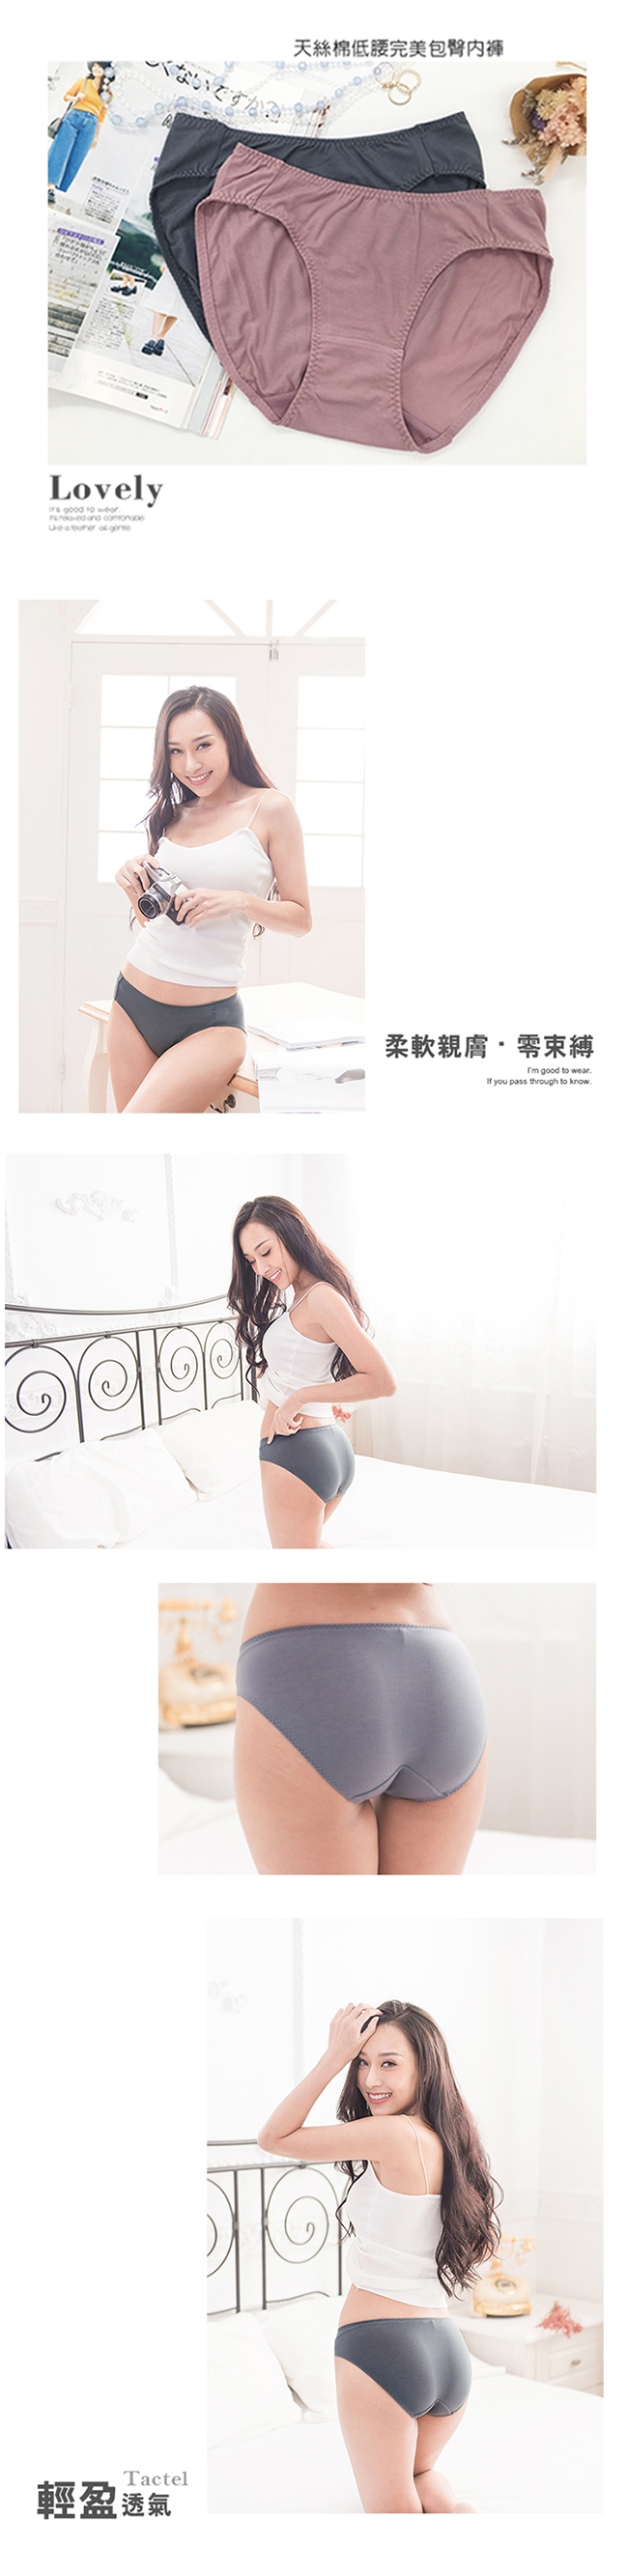 席艾妮SHIANEY 台灣製造(10件組)天絲棉纖維低腰內褲 臀部一片式剪裁